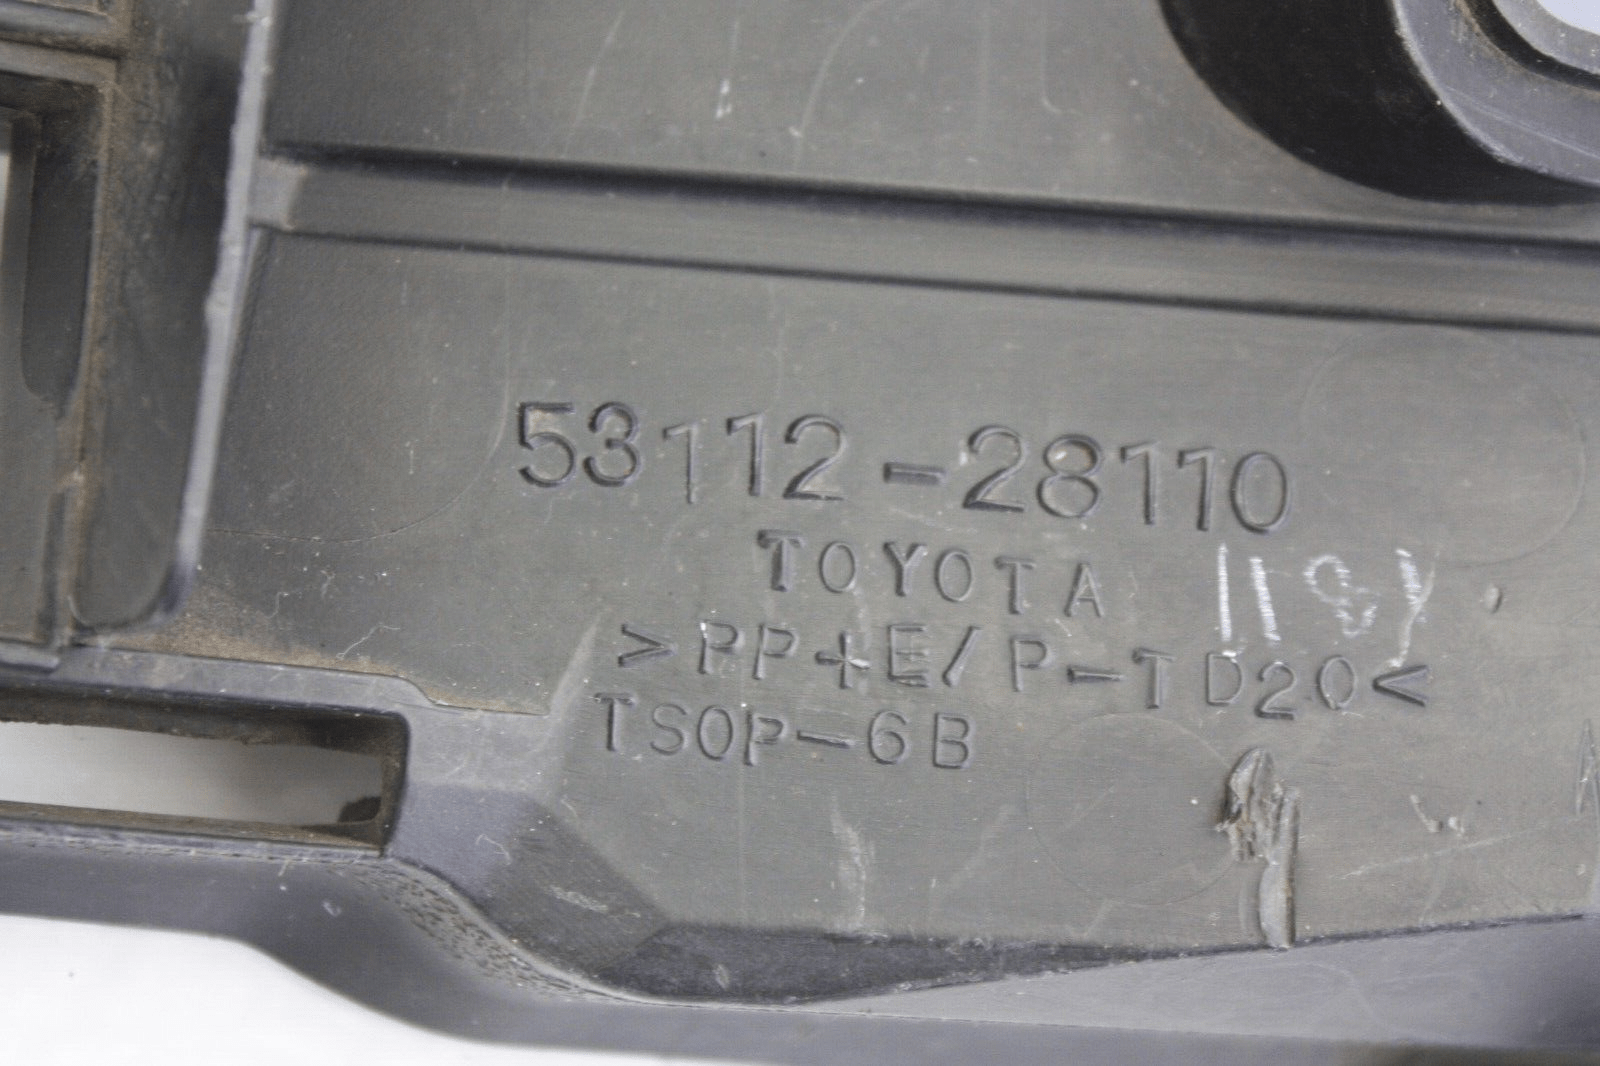 Toyota-Estima-Front-Bumper-Lower-Grill-53112-28110-Genuine-176249442667-7